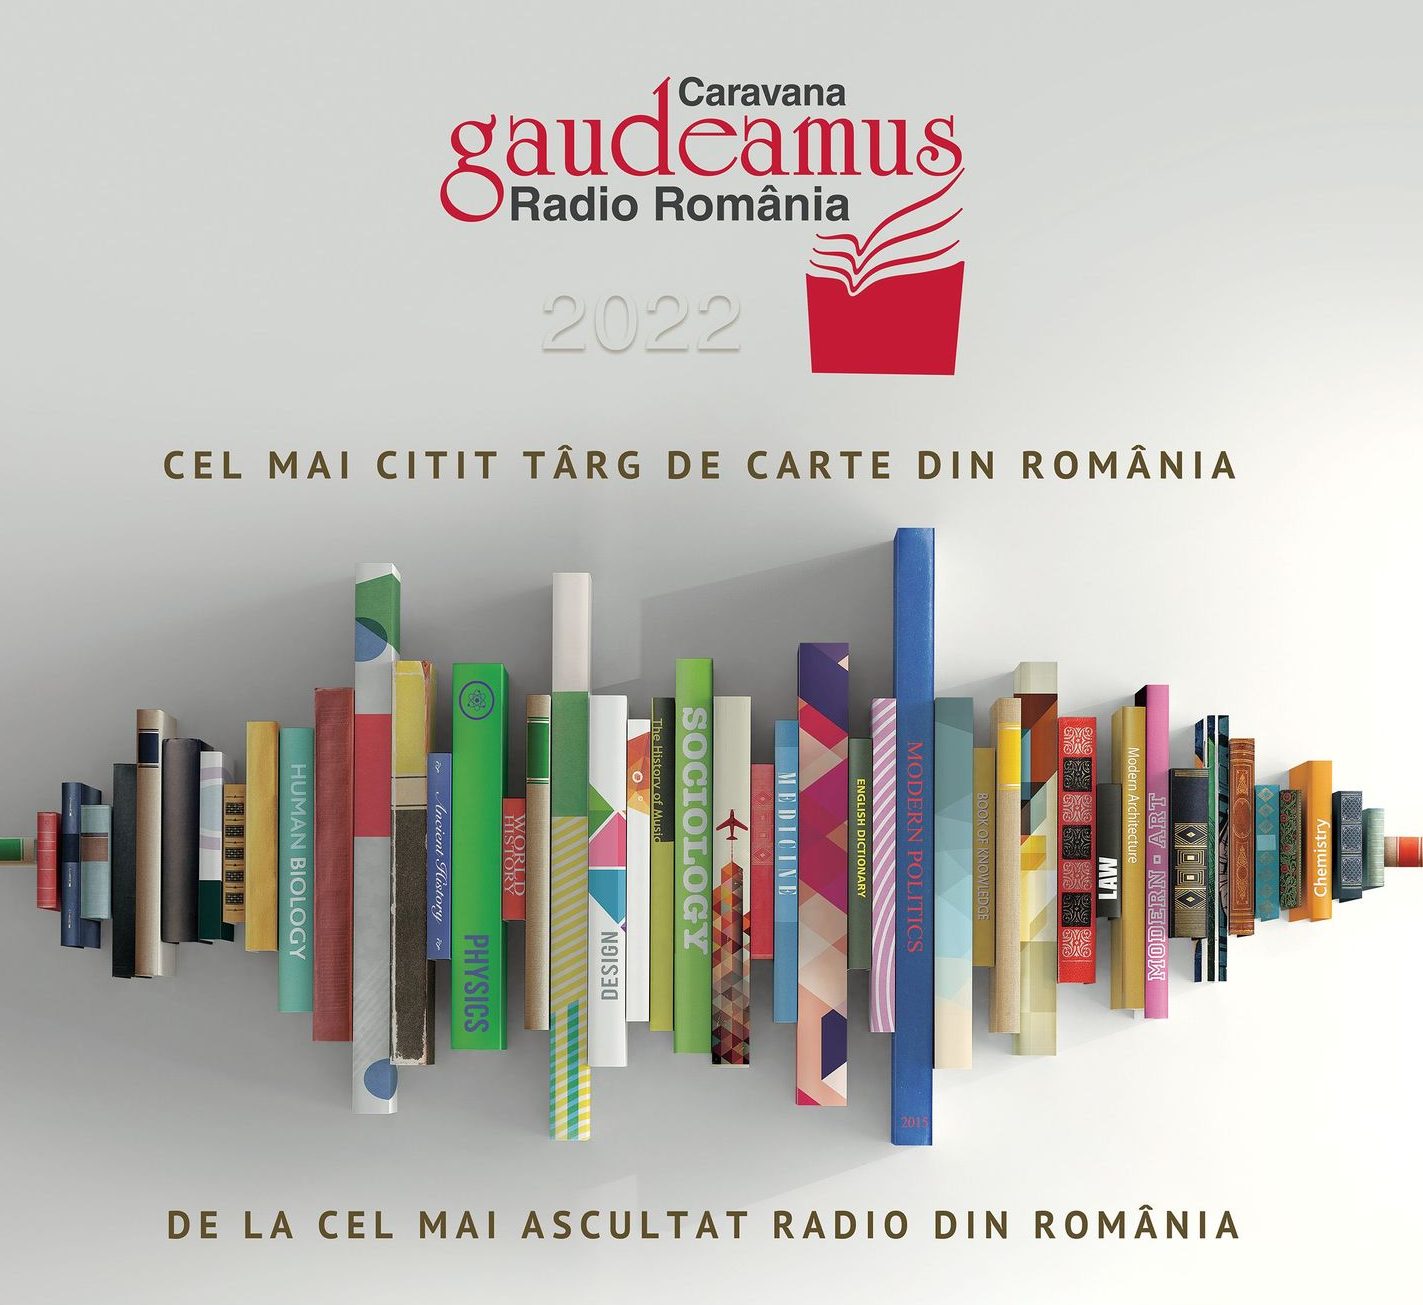 Târgul de Carte Gaudeamus Radio România – Iaşi, în Piaţa Unirii